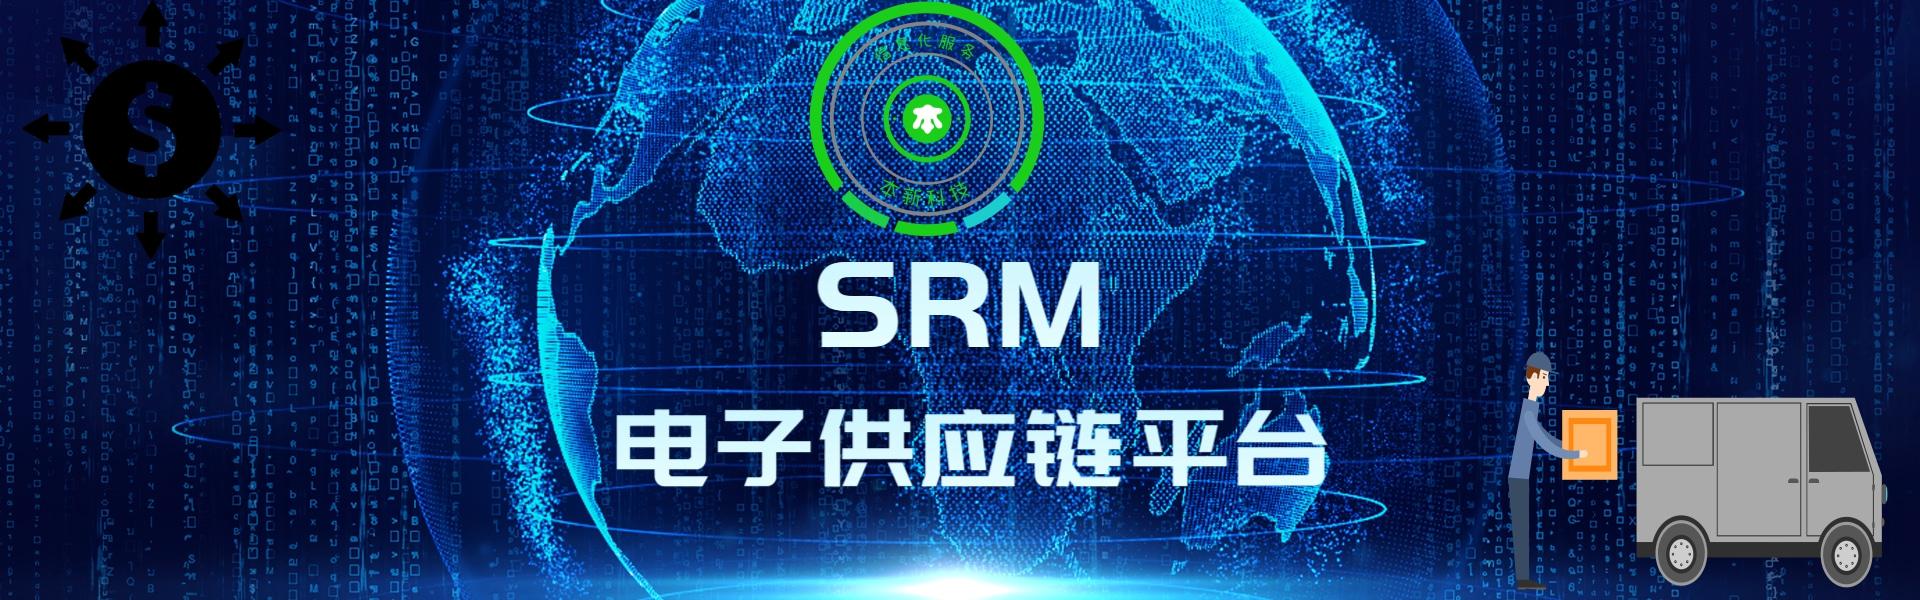 中山珠海江门SRM采购系统软件,电子供应链平台，供应商协同系统，电子采购平台